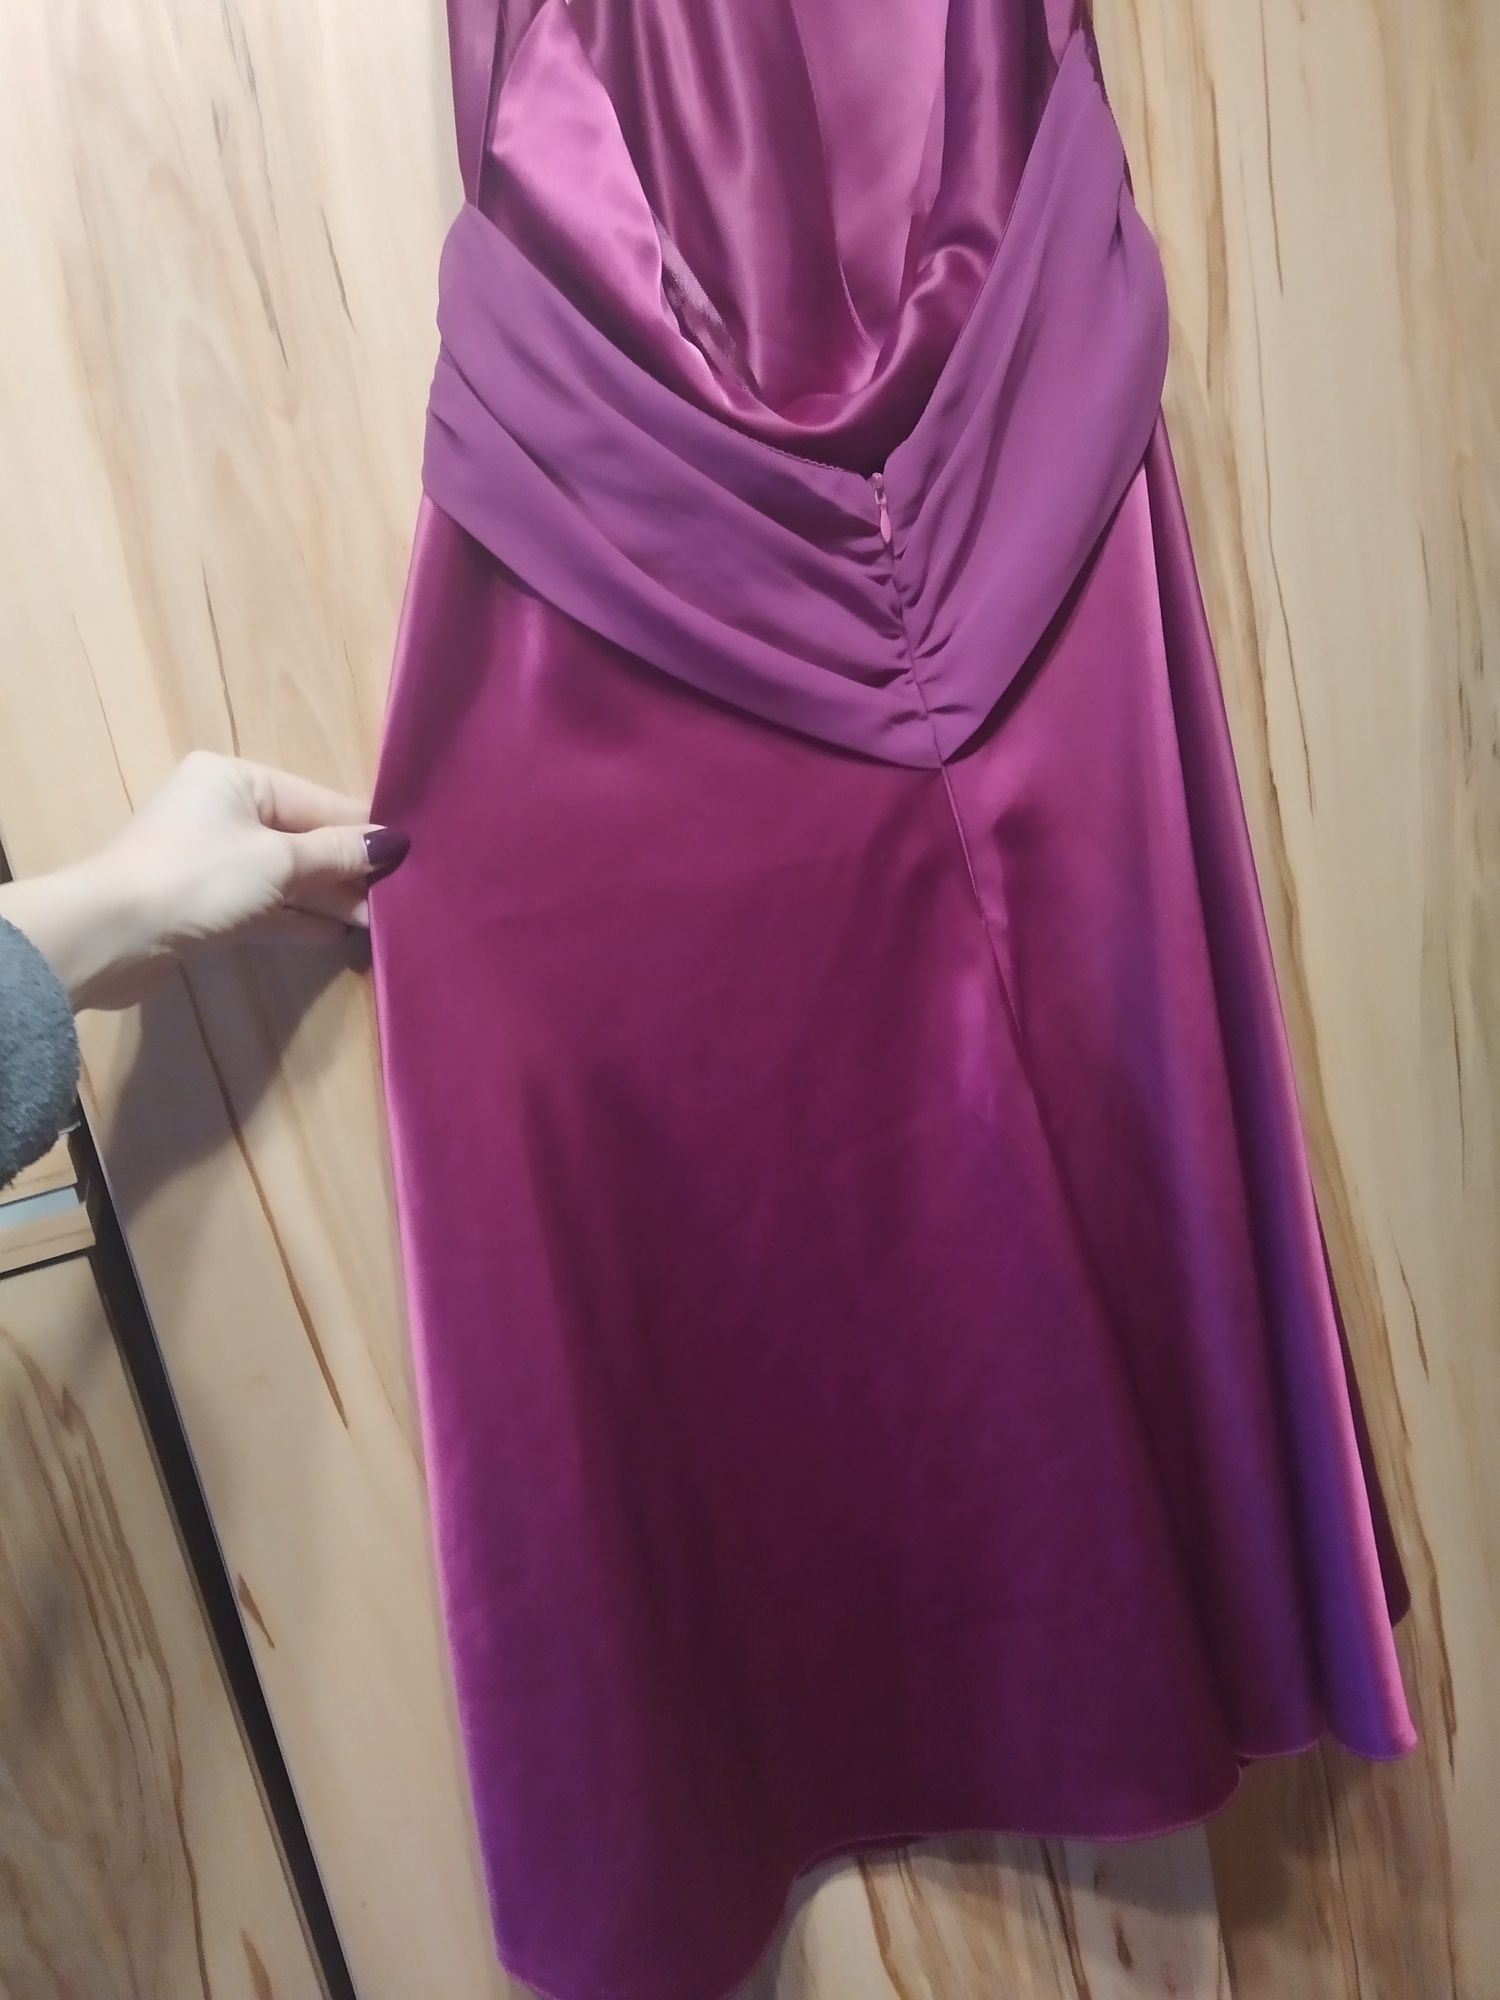 Sukienka fioletowa satynowa r. 40 studniówka/bal/wesele